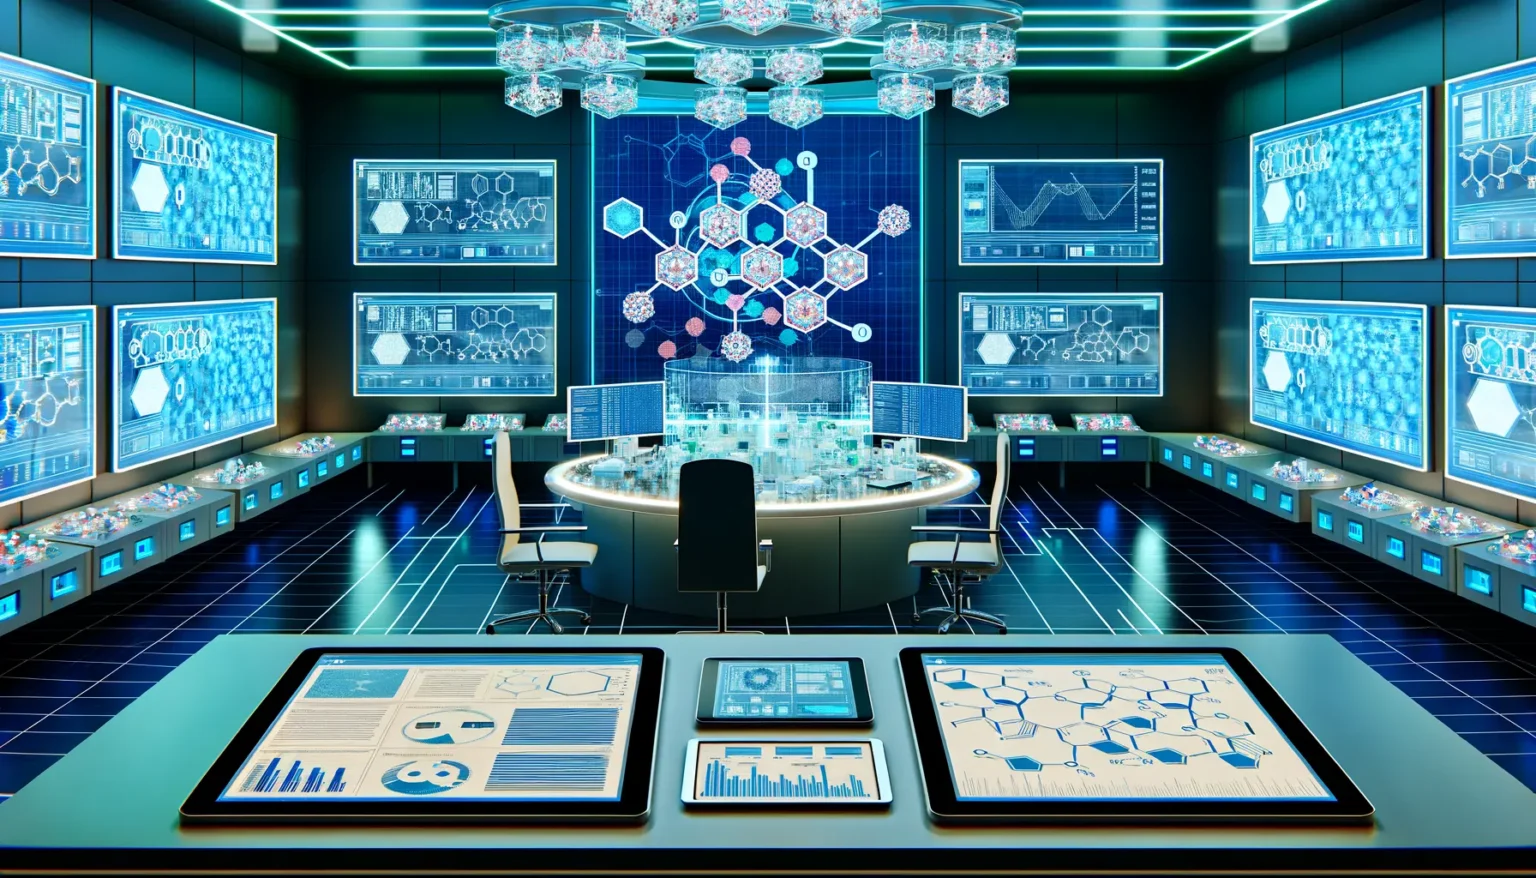 Ein hochmodernes Kontrollzentrum mit zahlreichen Bildschirmen an den Wänden, die verschiedene grafische Datenanzeigen und Diagramme zeigen. In der Mitte befindet sich eine runde Konsole mit transparenten Digitalanzeigen, umgeben von Stühlen. Über der Konsole schwebt ein komplexes leuchtendes Display, das an ein Molekülmodell erinnert. Der Raum ist in Blau- und Cyantönen gehalten, was ihm ein futuristisches, technologisches Flair verleiht. Im Vordergrund sind Tablets auf einem Tisch platziert, die ebenfalls mit Diagrammen und Daten bespielt sind.